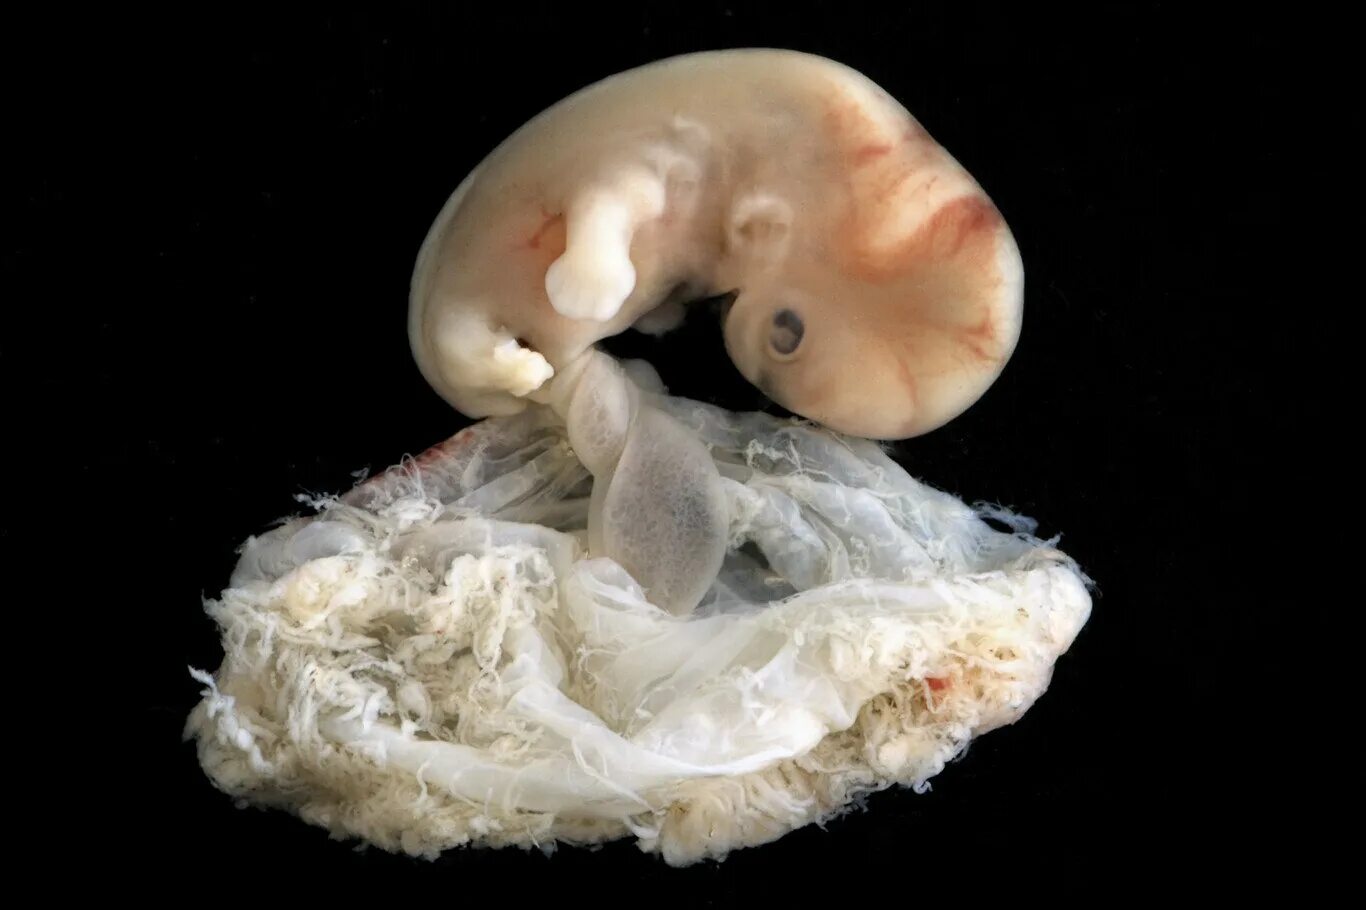 Эмбрион человека это. Беременность 6 недель фото эмбриона. Зародыш 6-7 недель беременности. Человеческий эмбрион 7 недель.